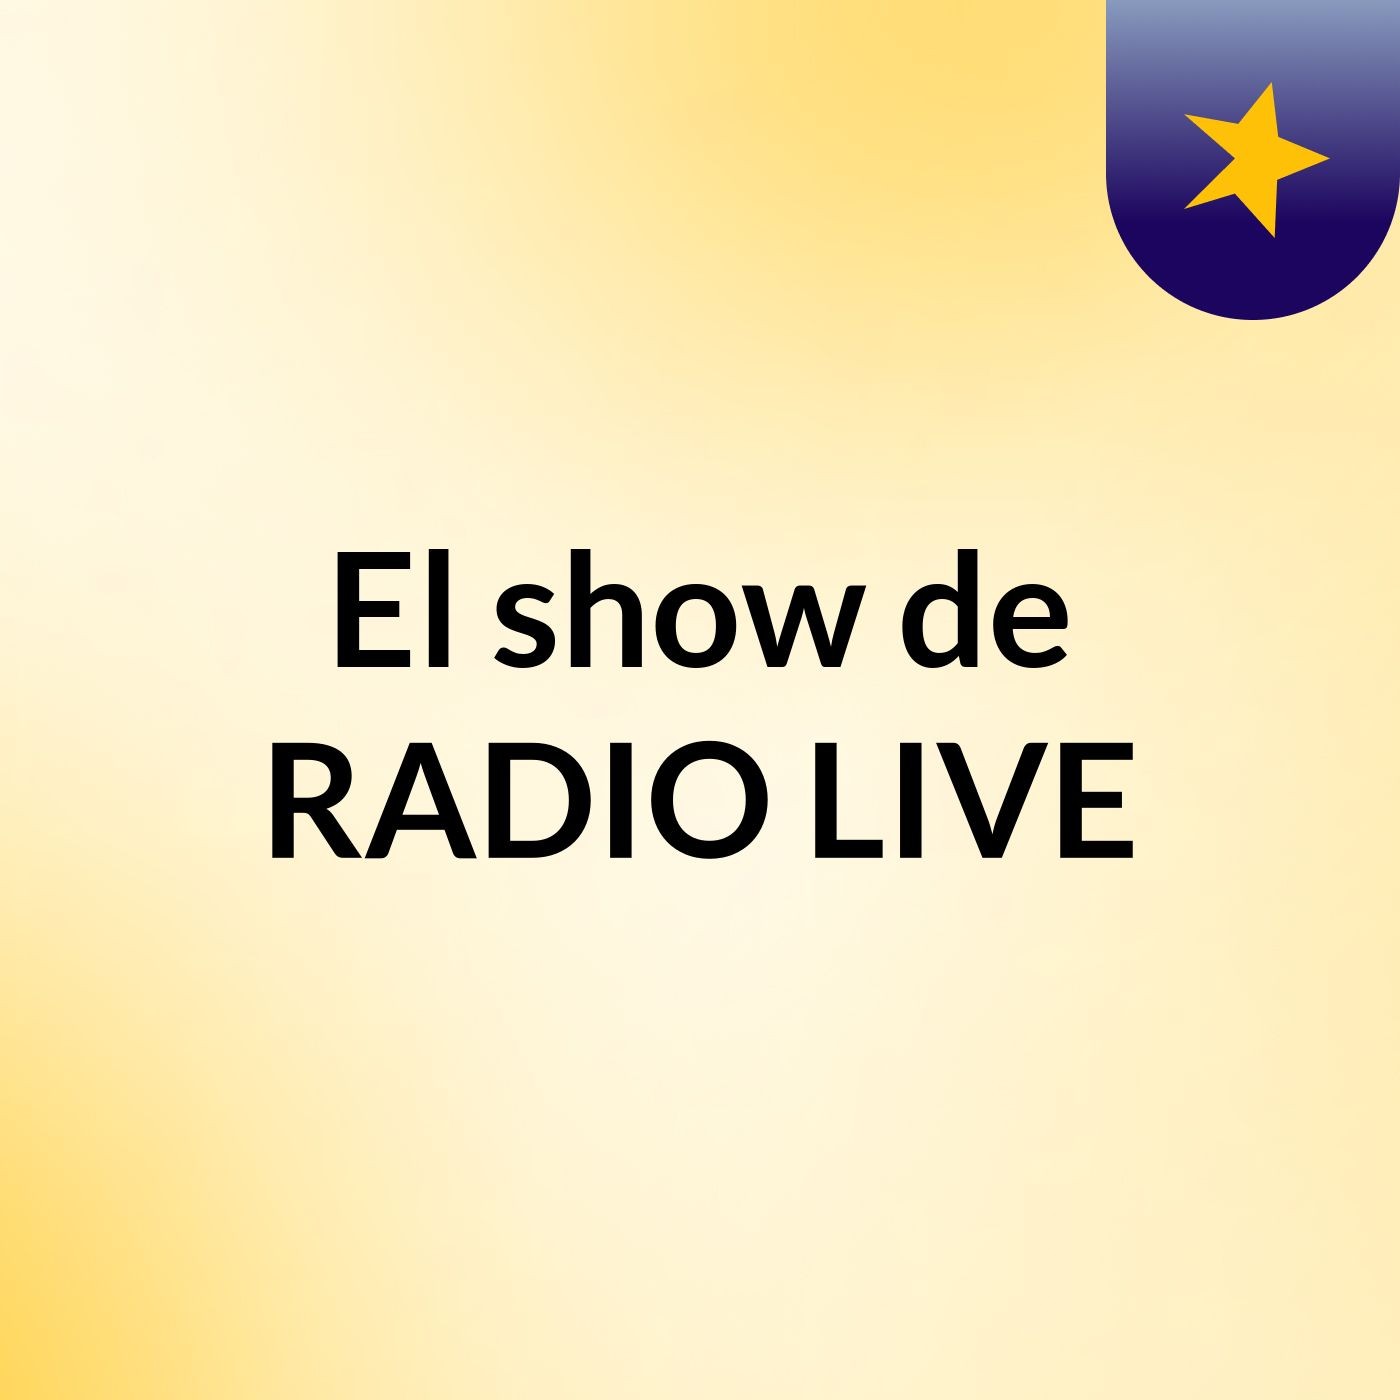 El show de RADIO LIVE